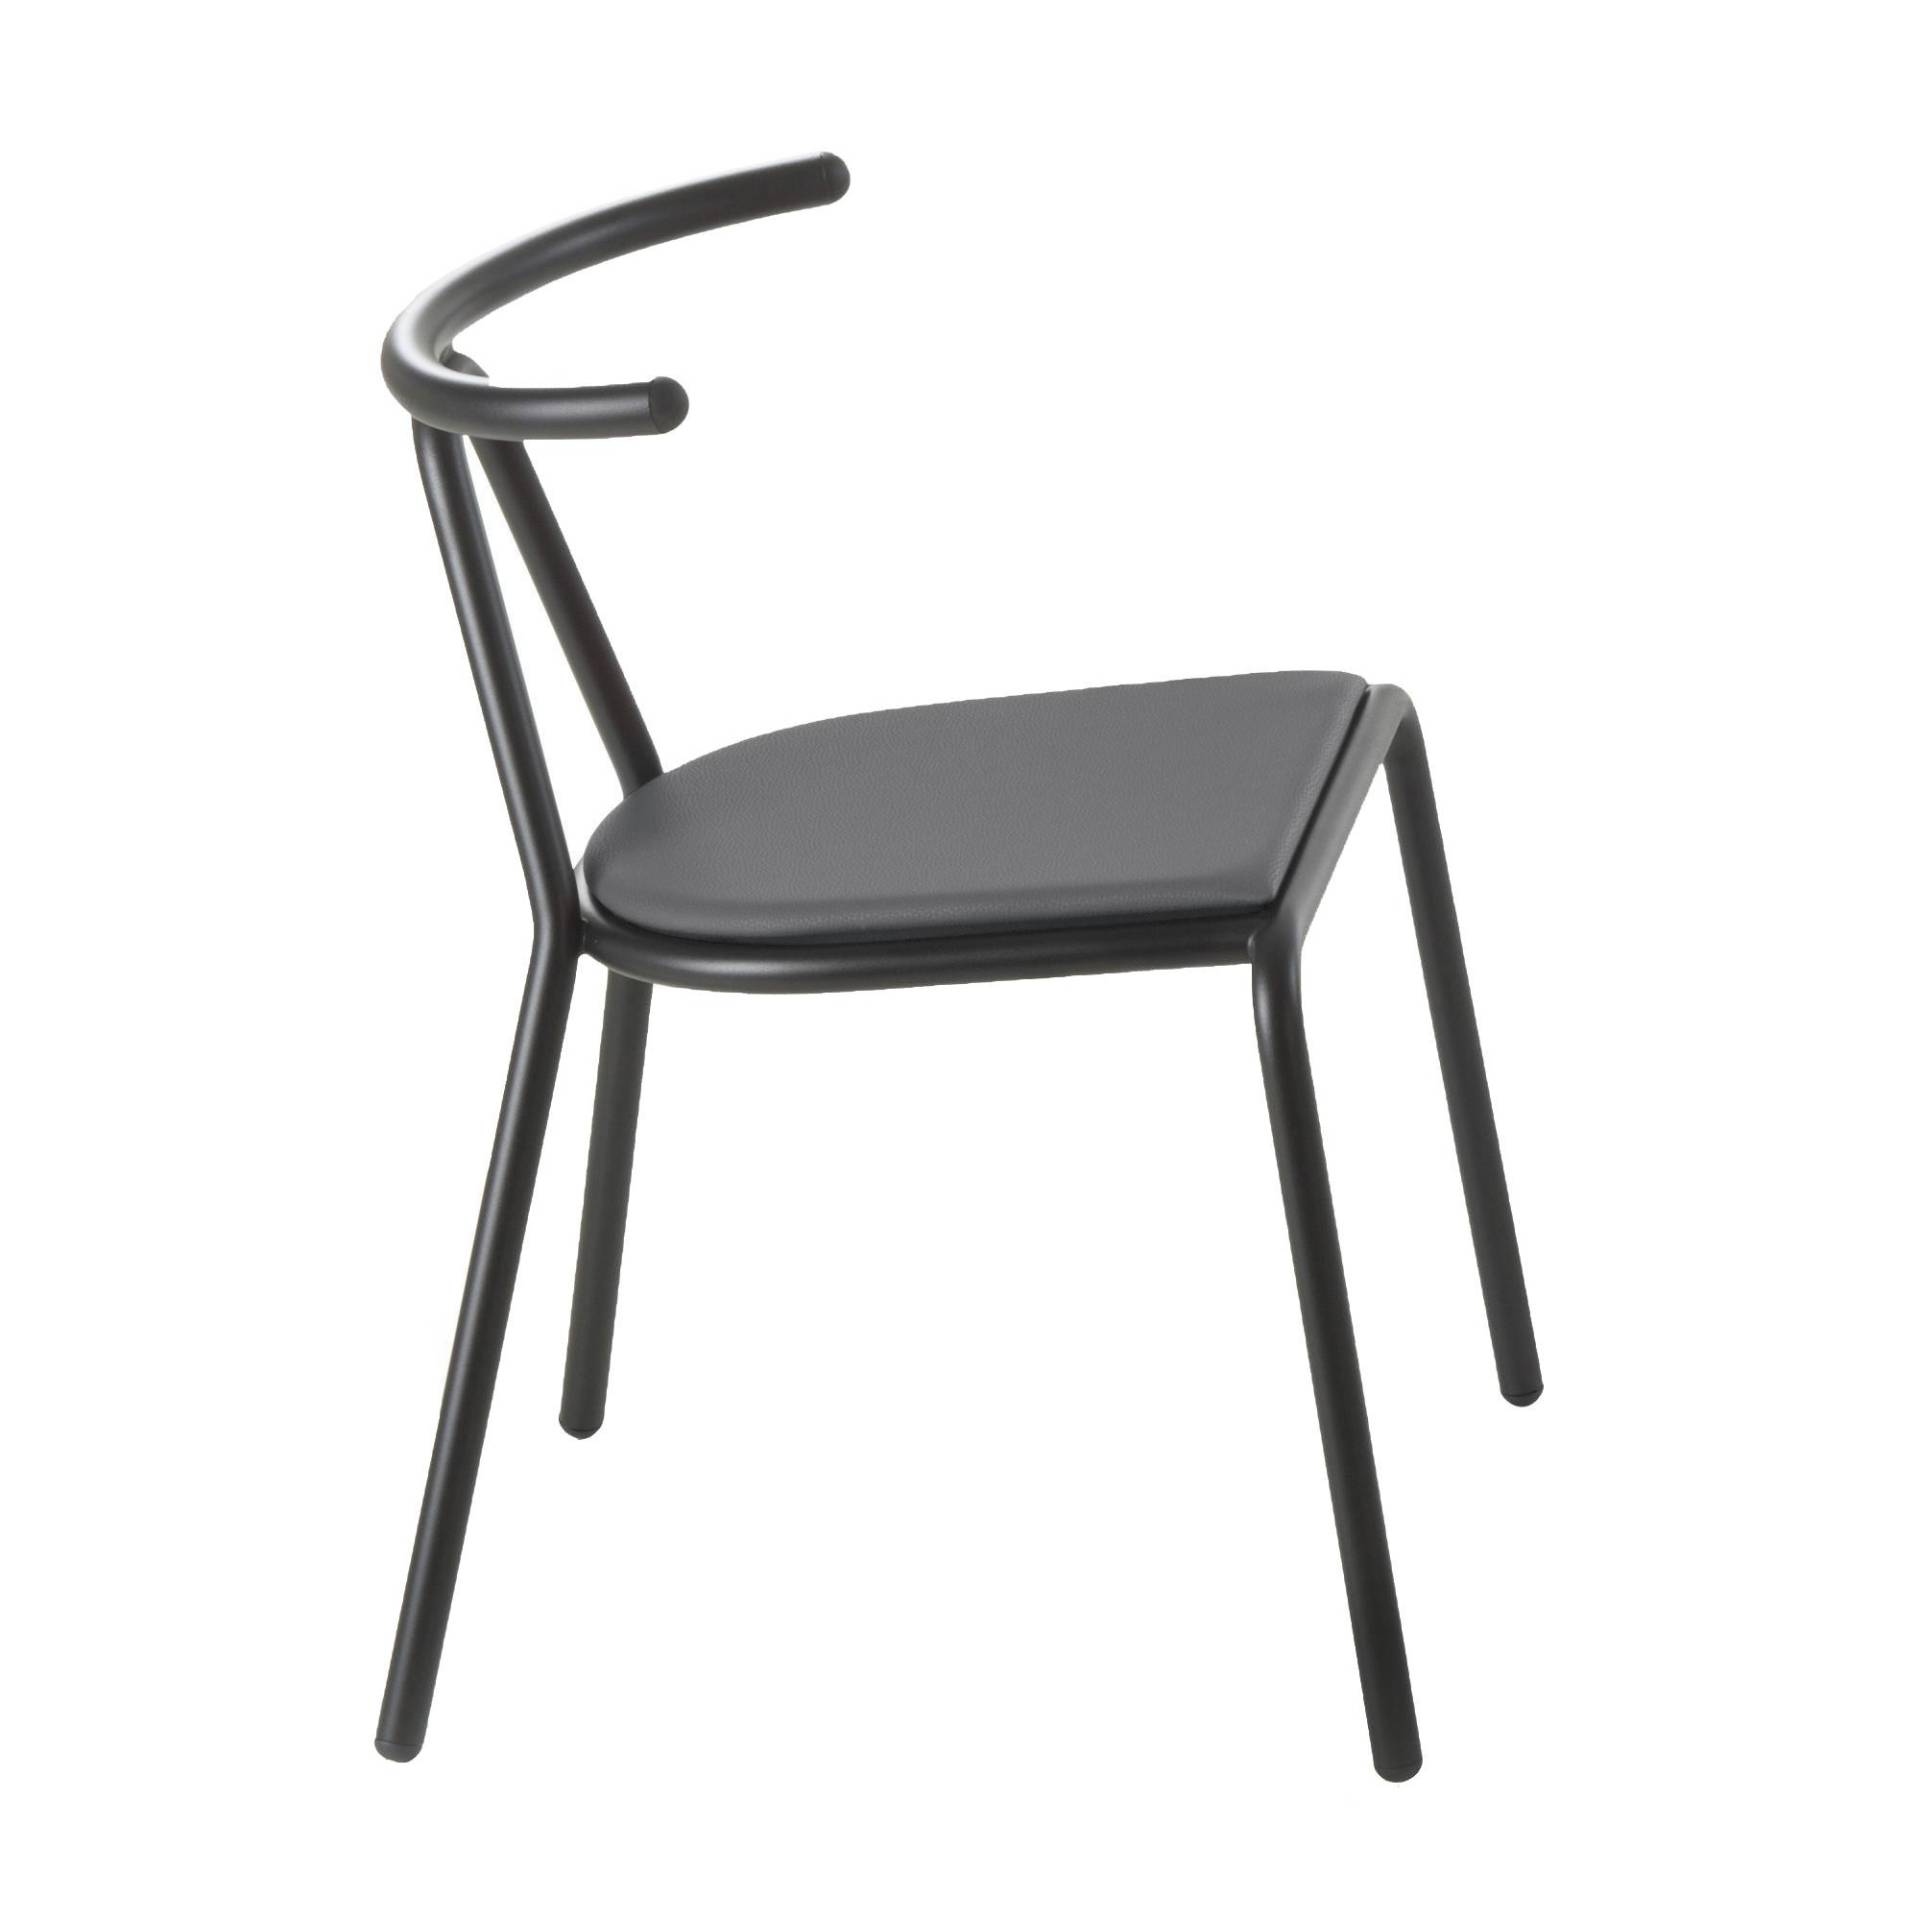 B-Line - Toro Stuhl Sitzfläche Platinum Flukso - anthrazit/Sitzfläche: Platinum Flukso/Gestell schwarz/BxHxT 55x73,5x54cm von B-Line